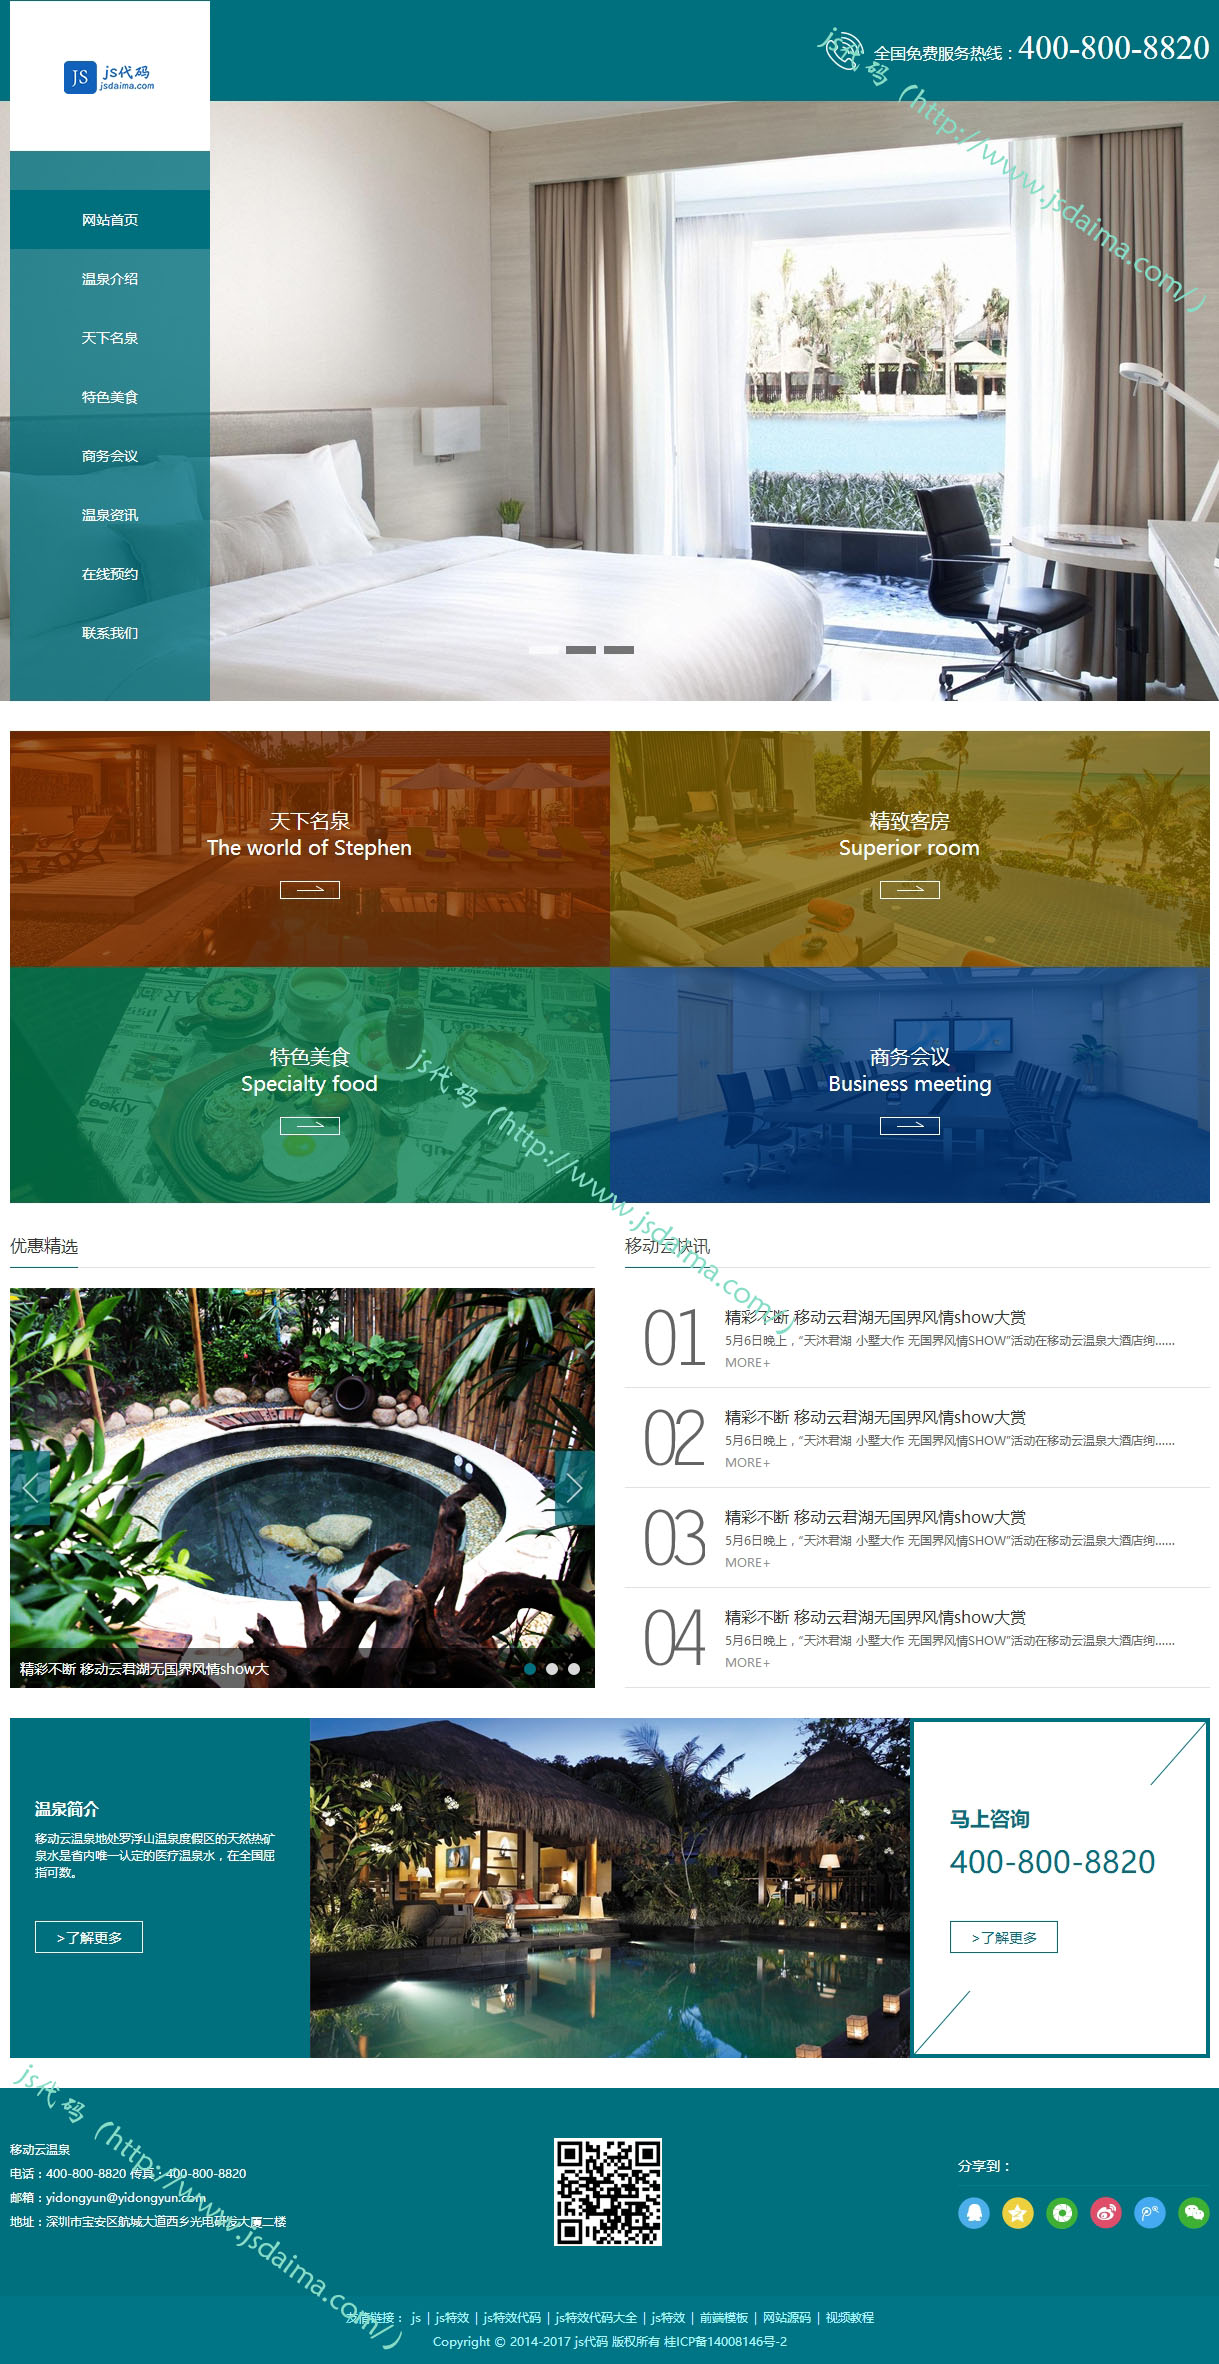 绿色简约大气酒店温泉度假休闲网站模板全套下载